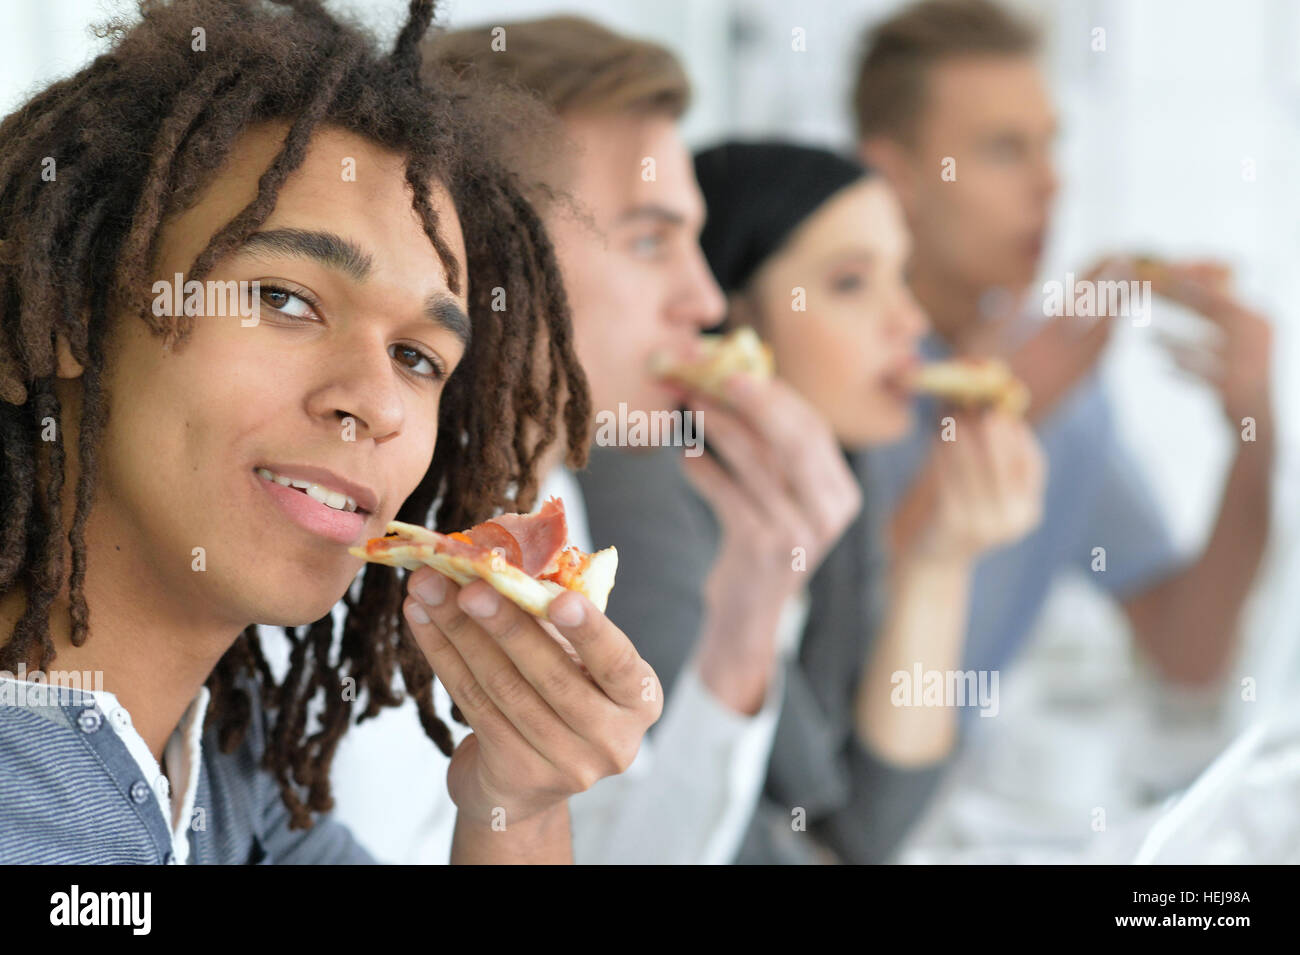 Persone mangiare la pizza Foto Stock